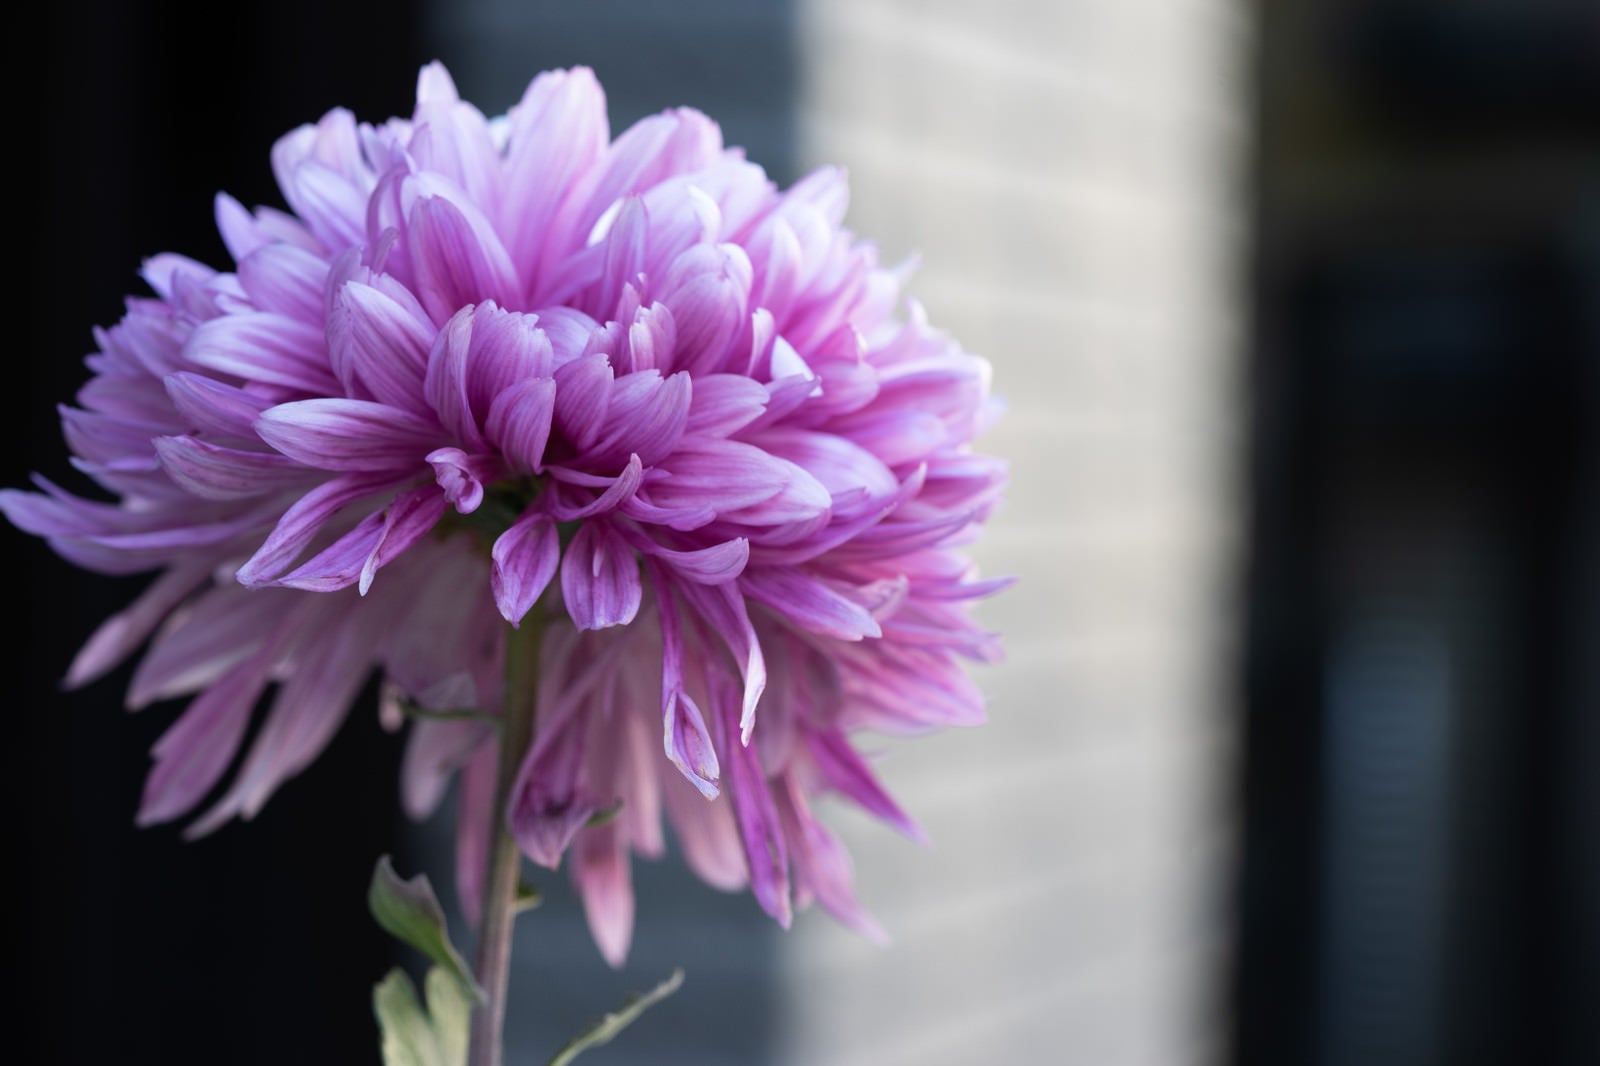 「紫がかる菊の花」の写真